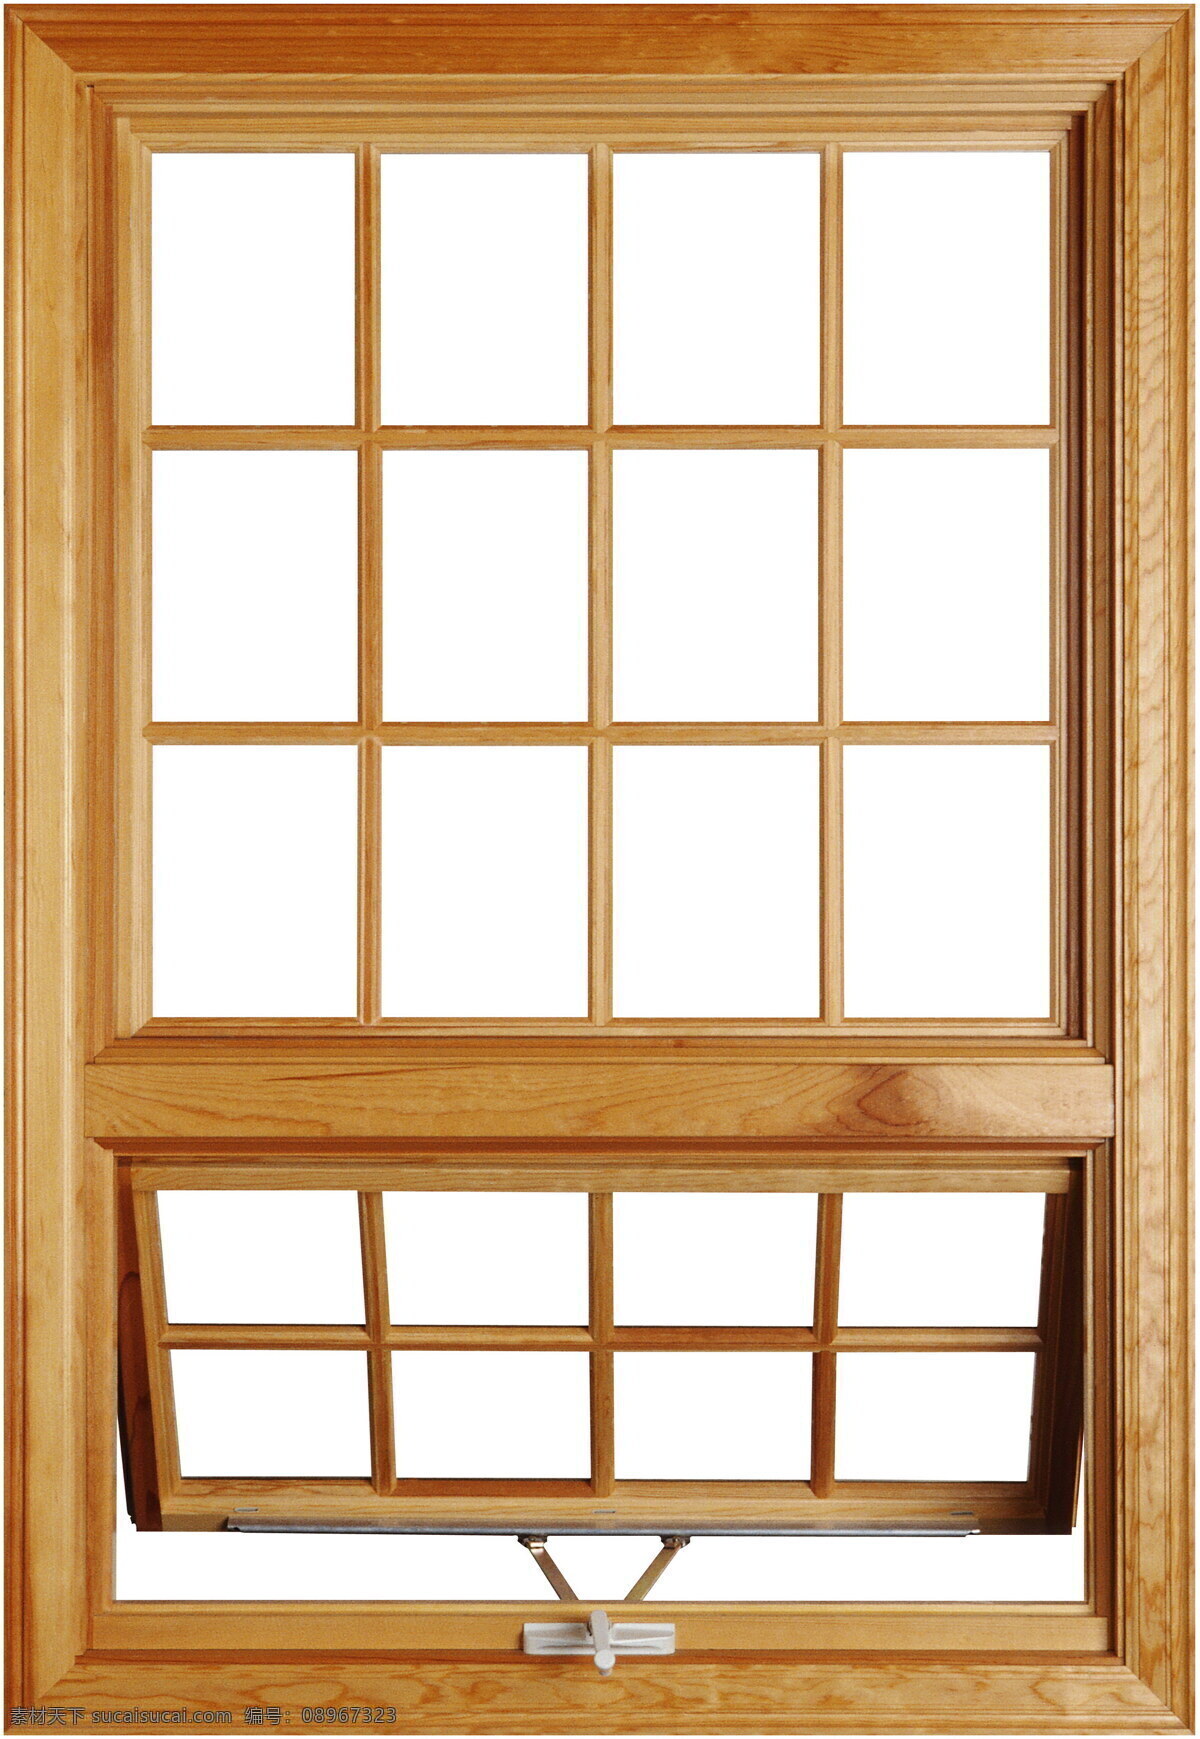 半开木窗 贴图0002 贴图 设计素材 木窗 贴图素材 建筑装饰 白色